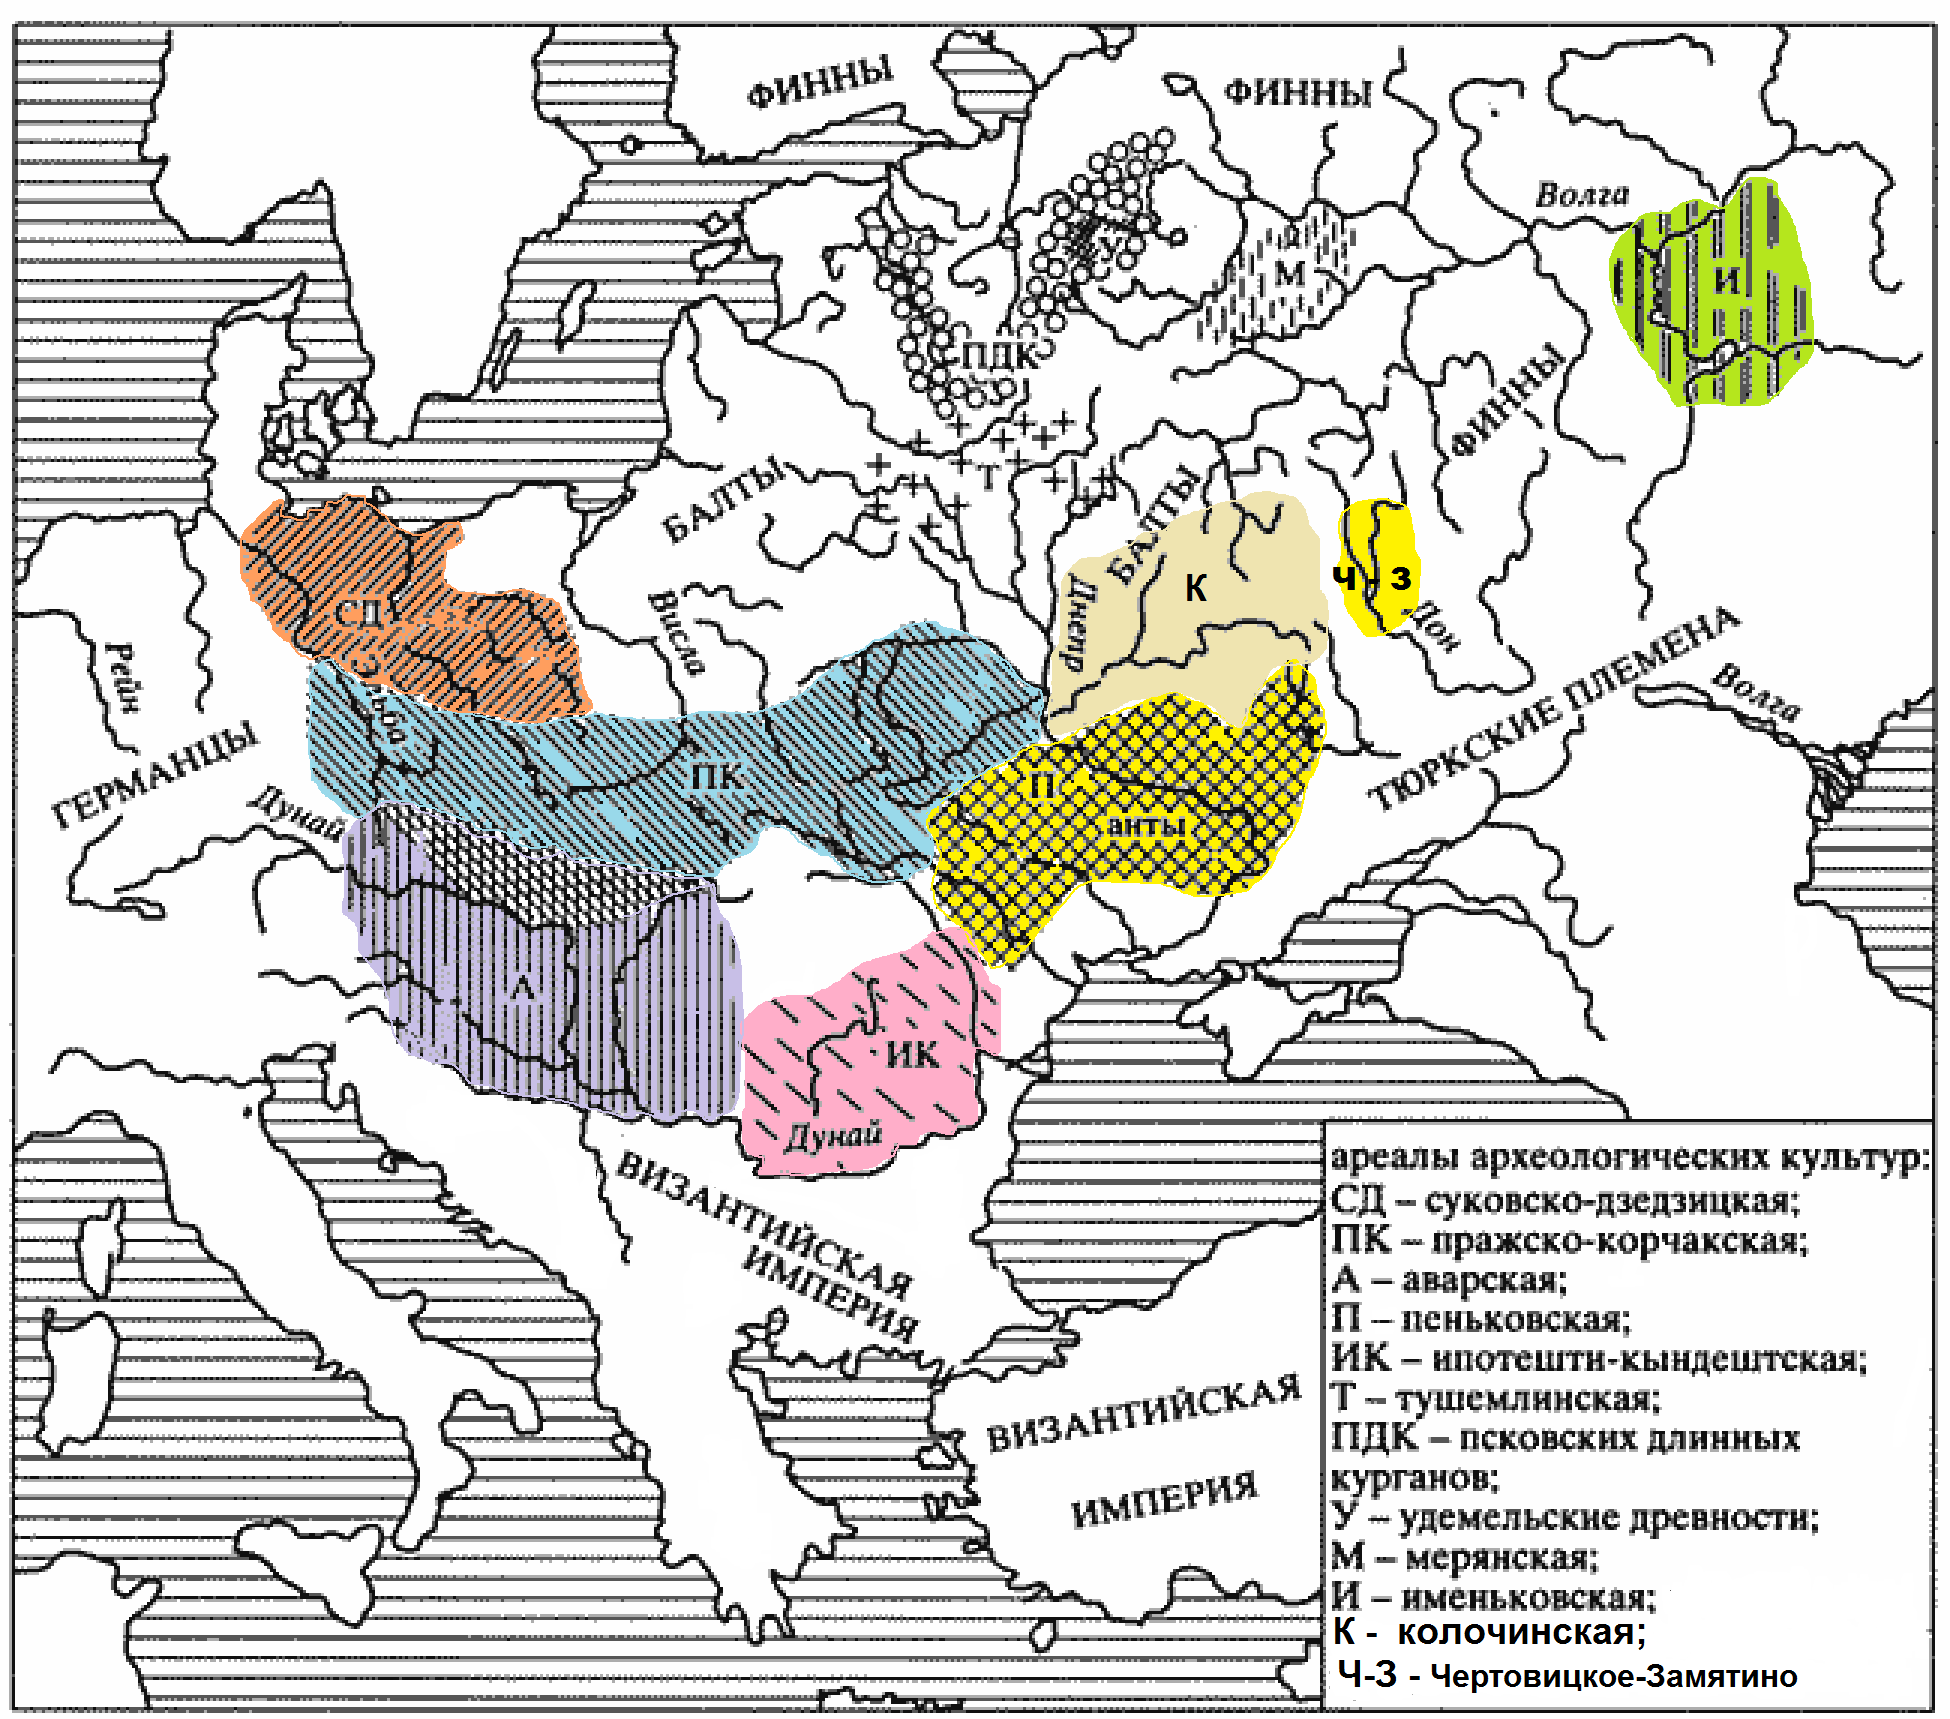 Археологические культуры Восточной Европы гуннского и постгуннского периода